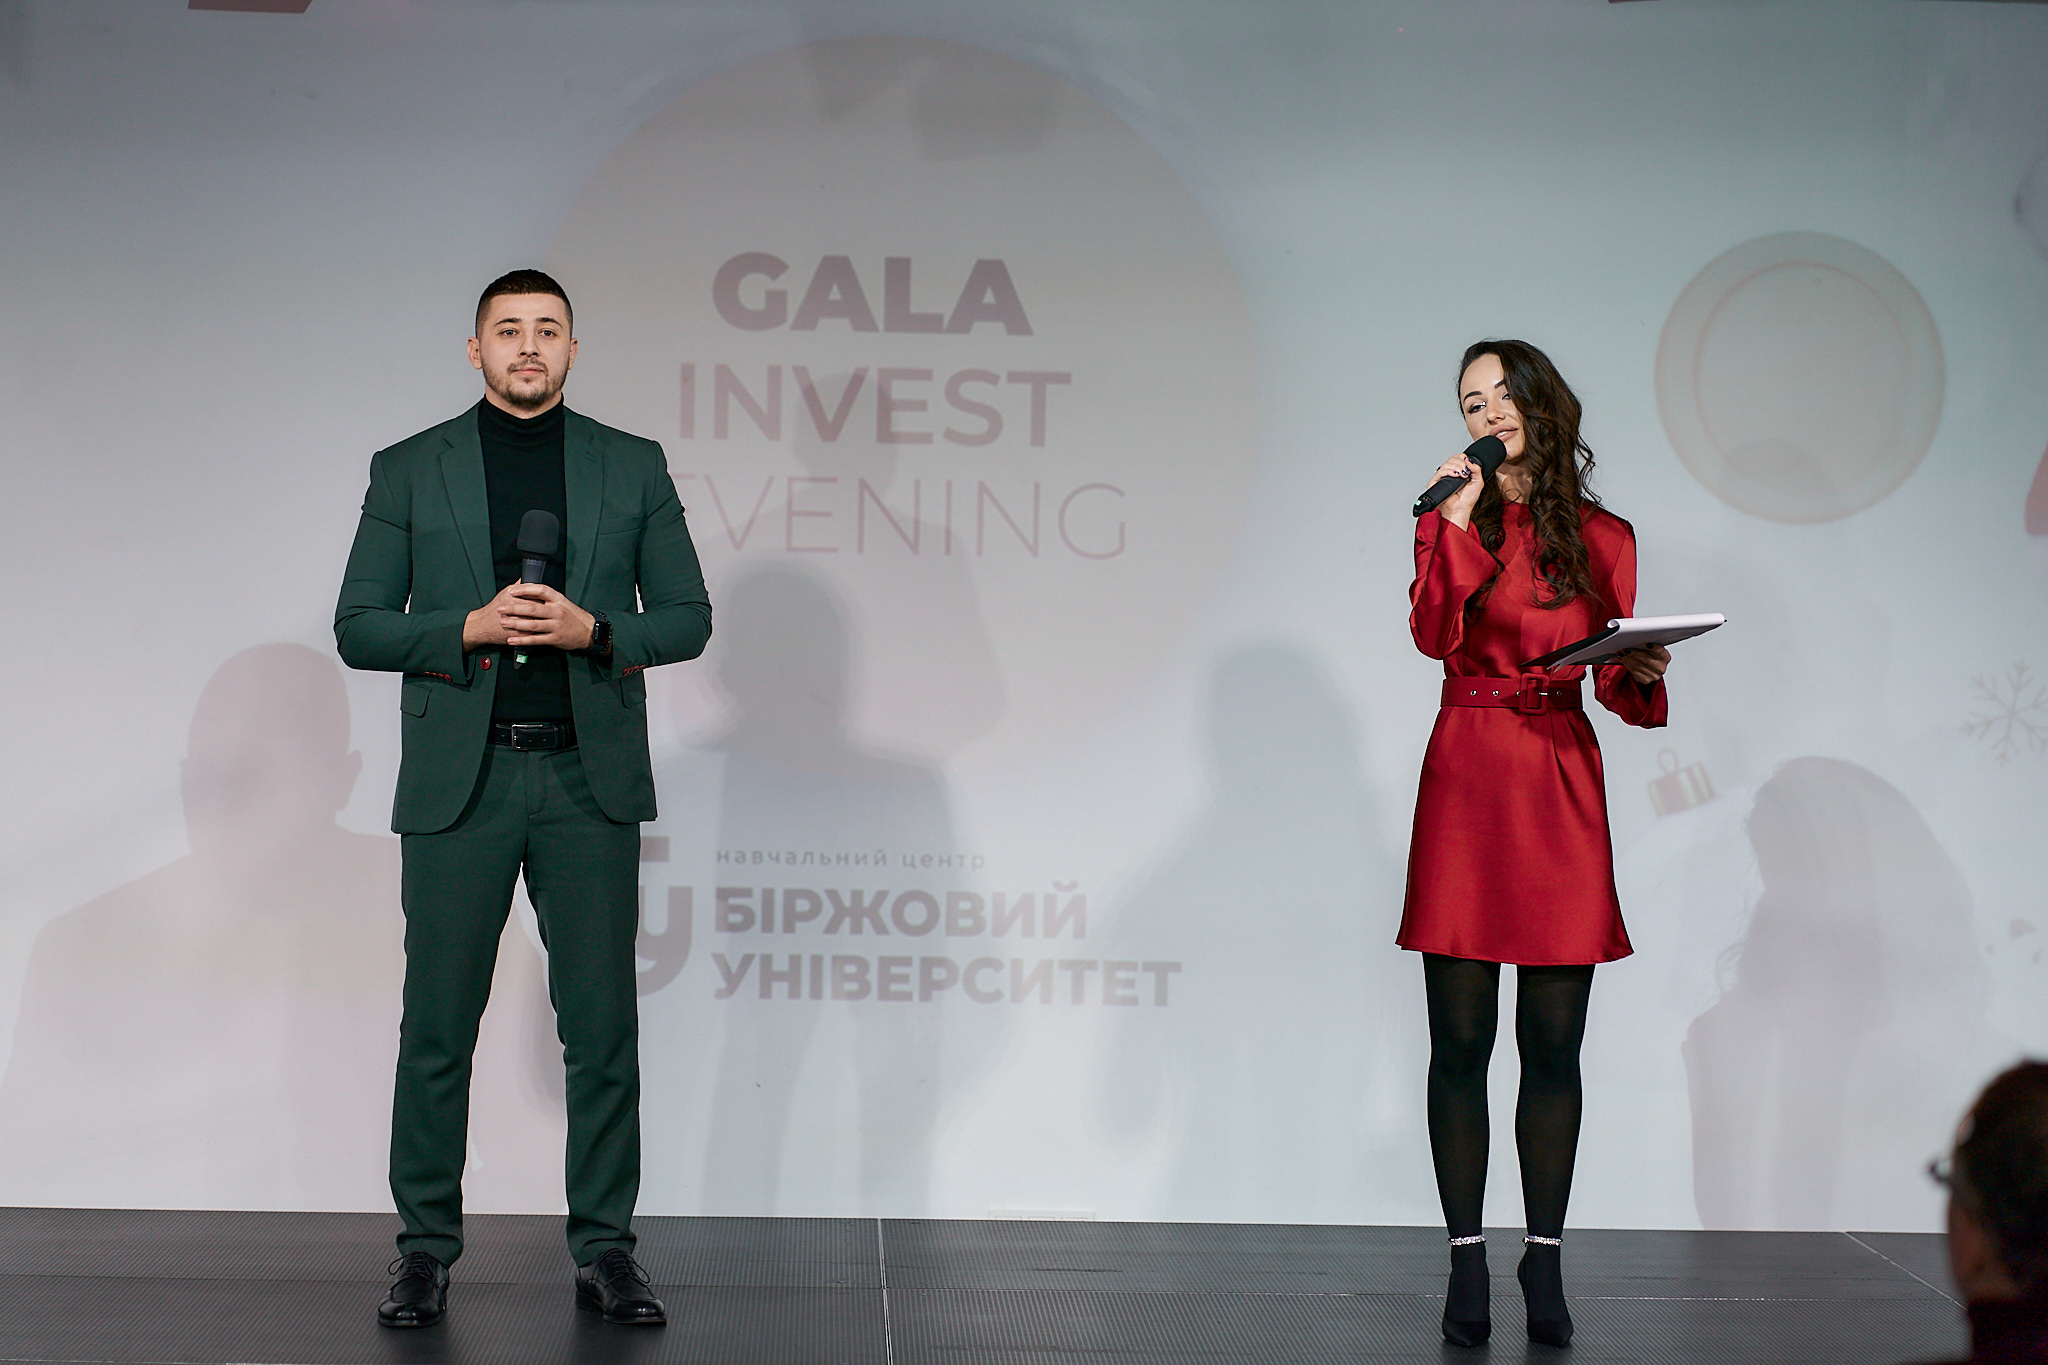 Gala Invest Evening: закрита вечірка інвесторів із презентацією дослідження фінграмотності українців